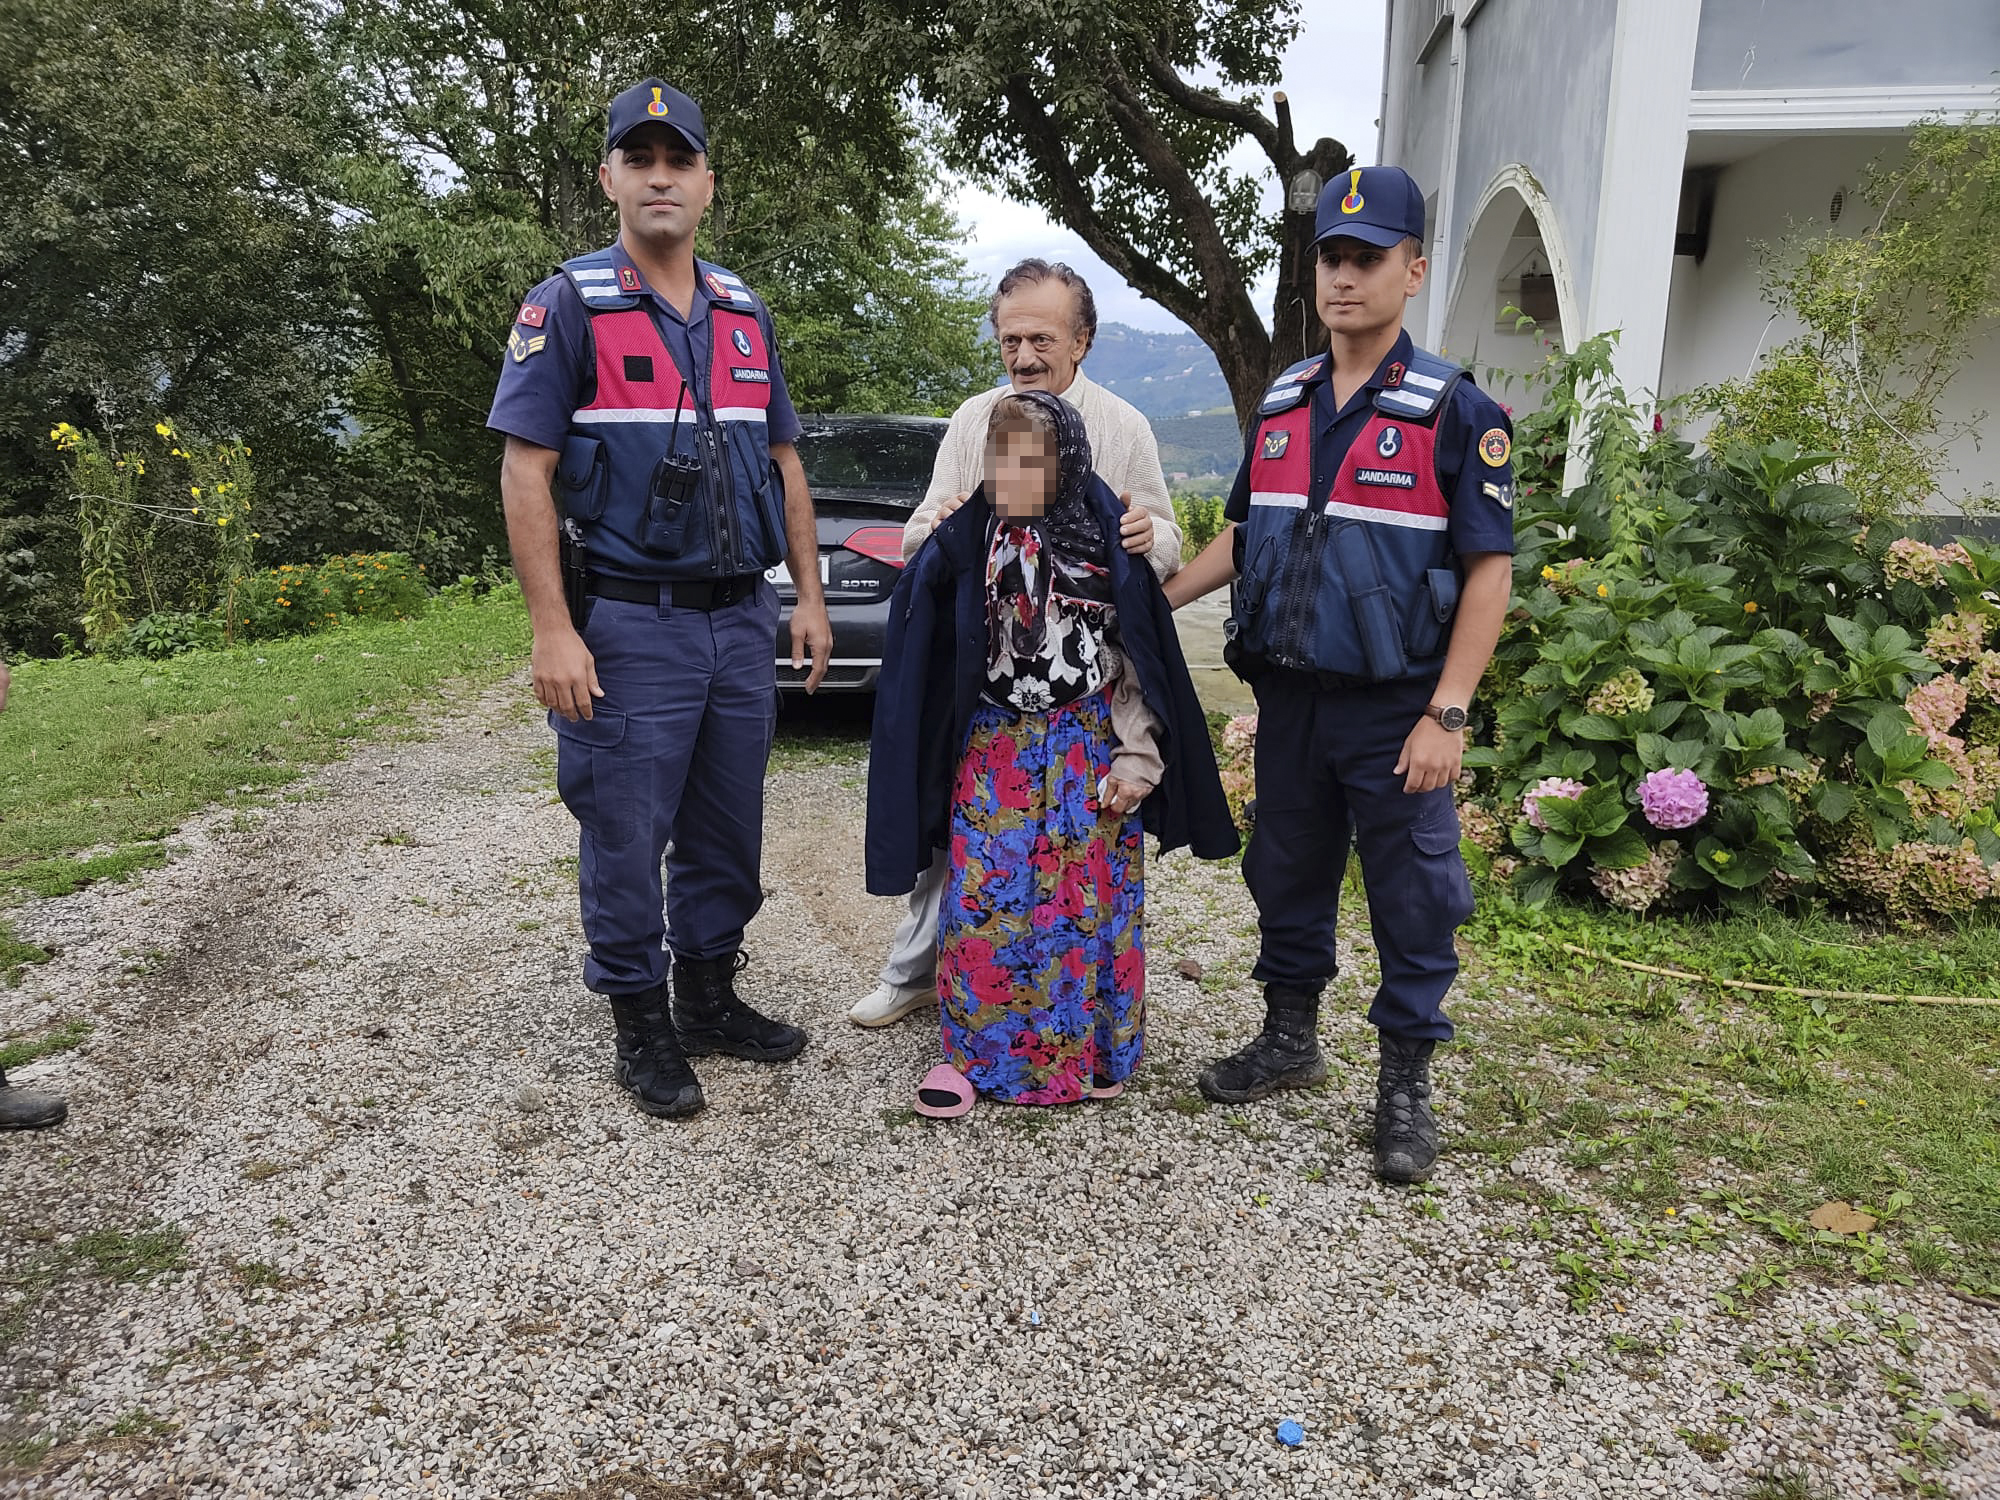 Samsun'da dün kaybolan yaşlı kadın bulundu